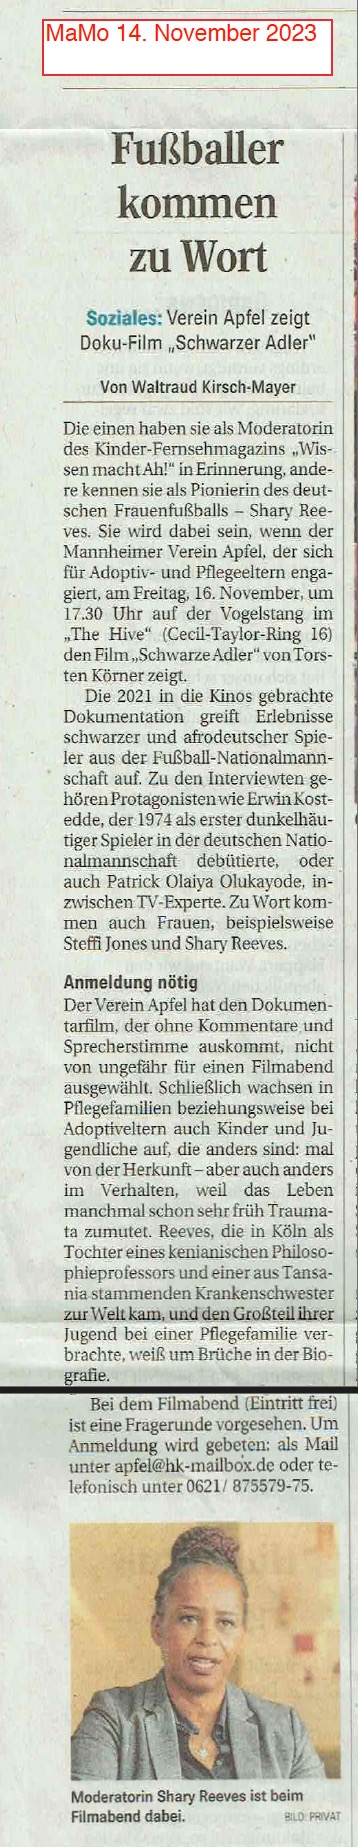 Artikel über Dokumentarfilm "Schwarzer Adler" und Fußball.